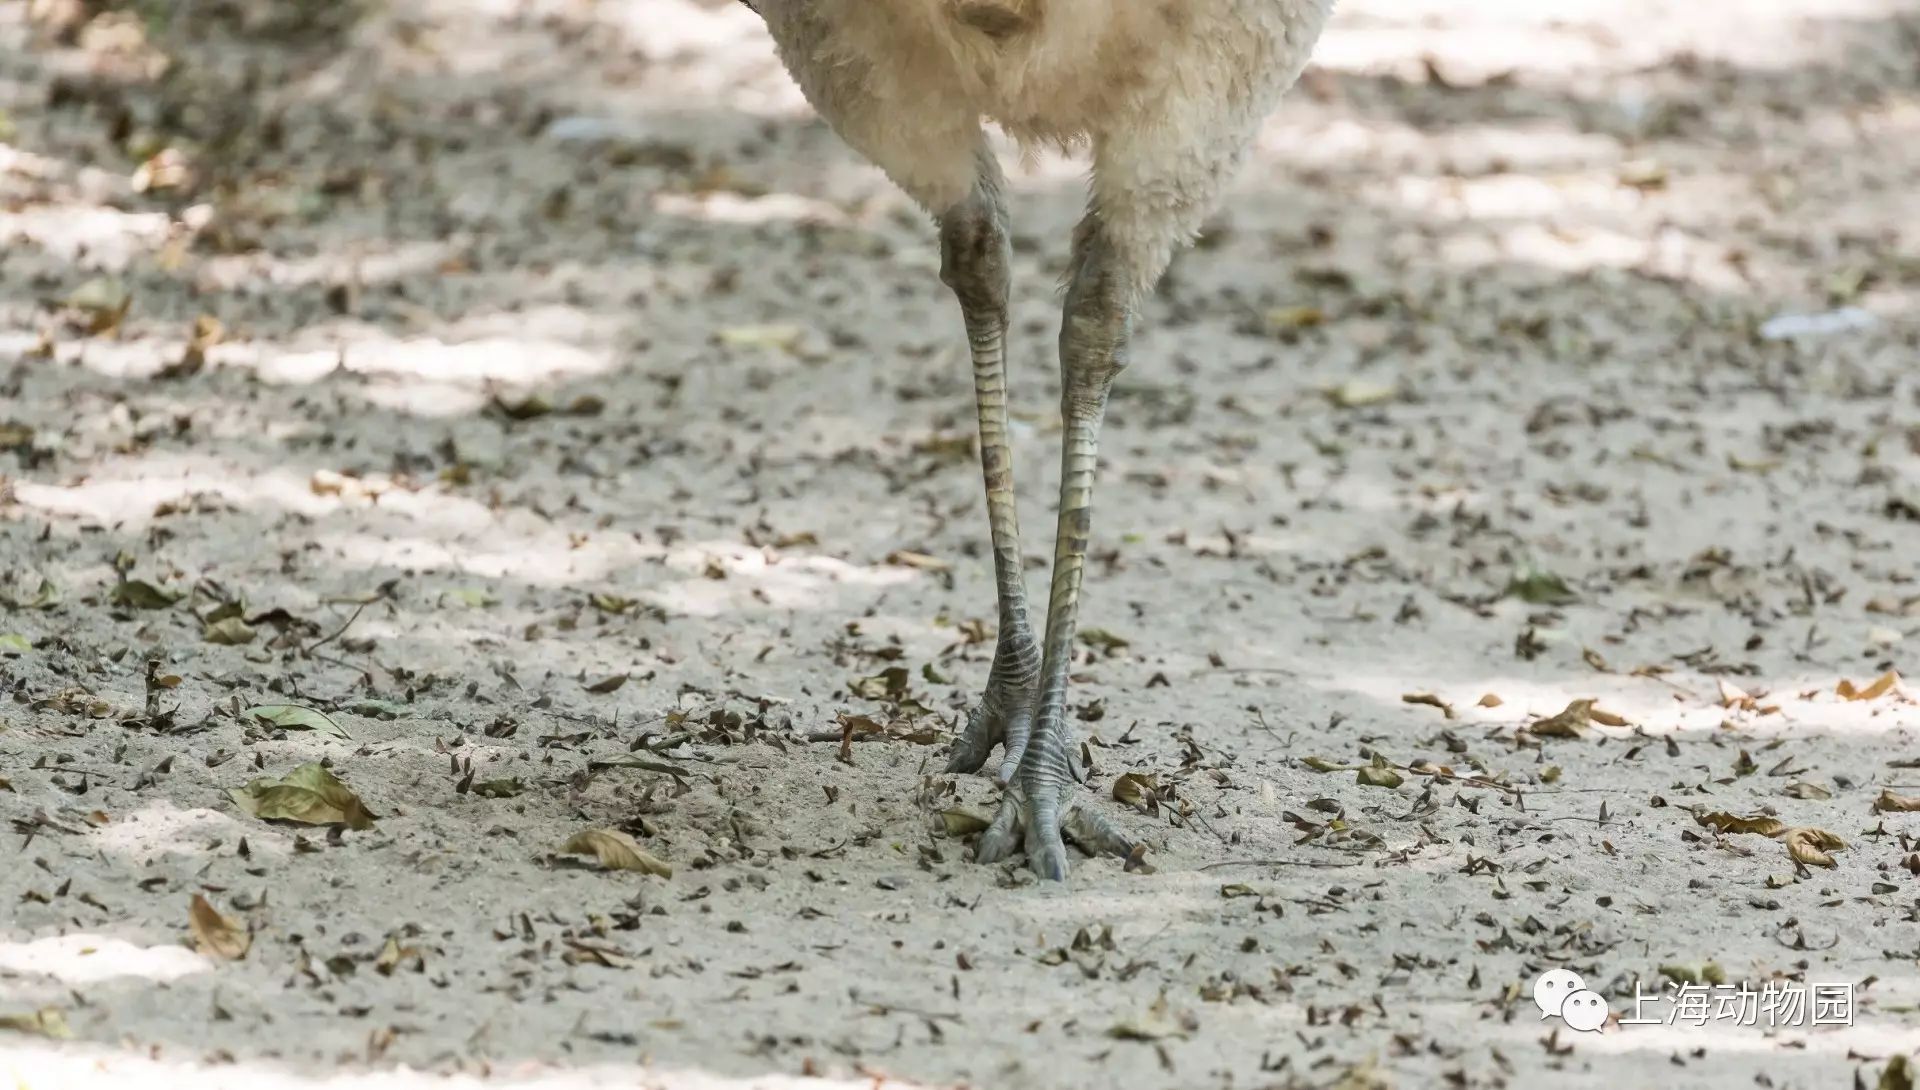 美洲鸵鸟脚趾看完上面的简单介绍,有没有对四种动物的形态特征差异有